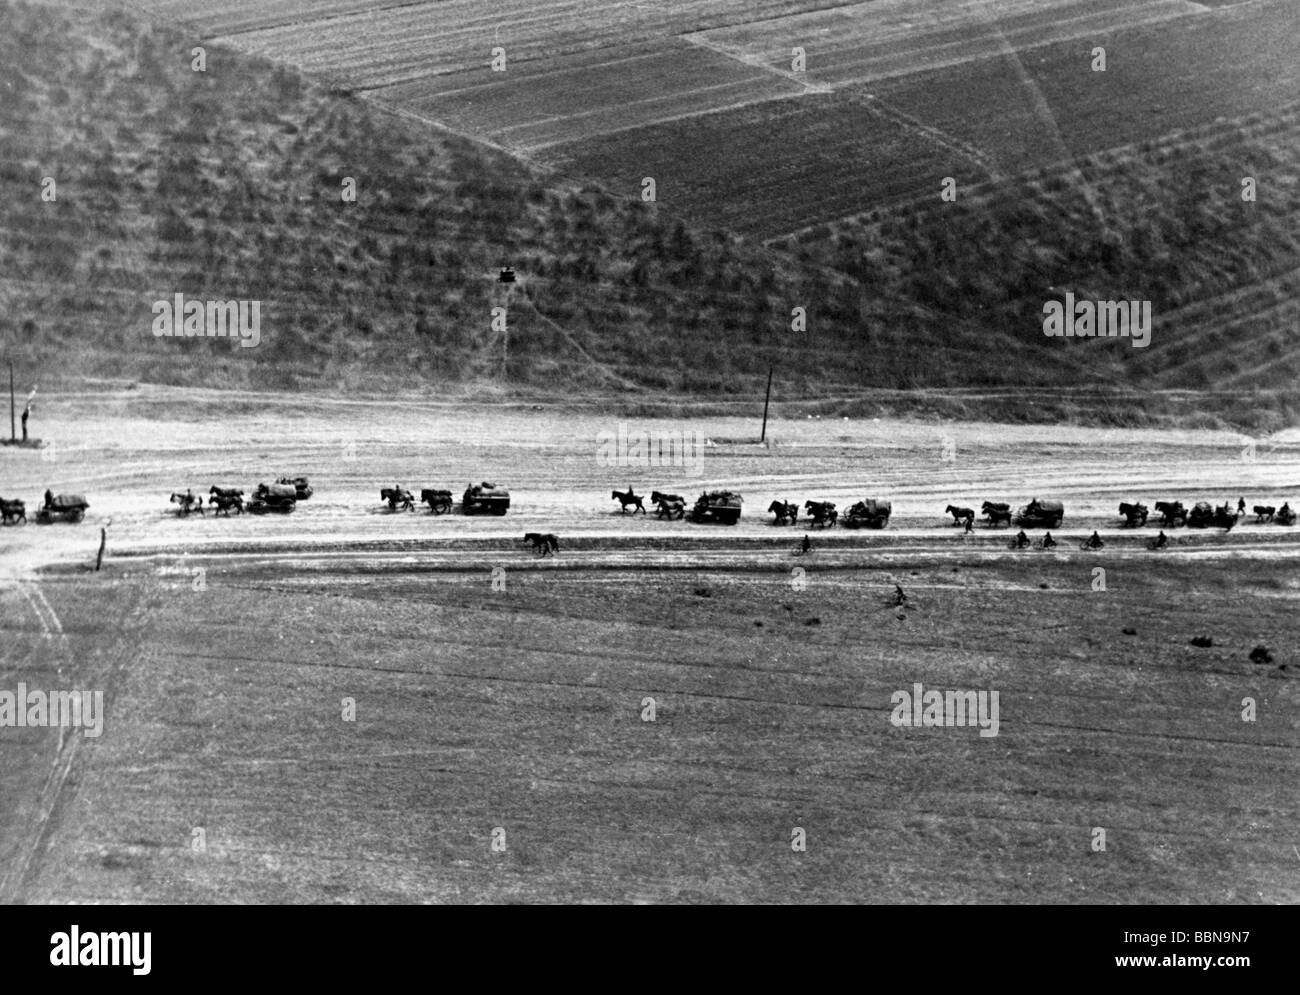 Eventi, Seconda guerra mondiale / seconda guerra mondiale, Russia 1941, colonna tedesca di veicoli trainati da cavalli che avanzano, Bielorussia, estate 1941, fotografia aerea, Foto Stock